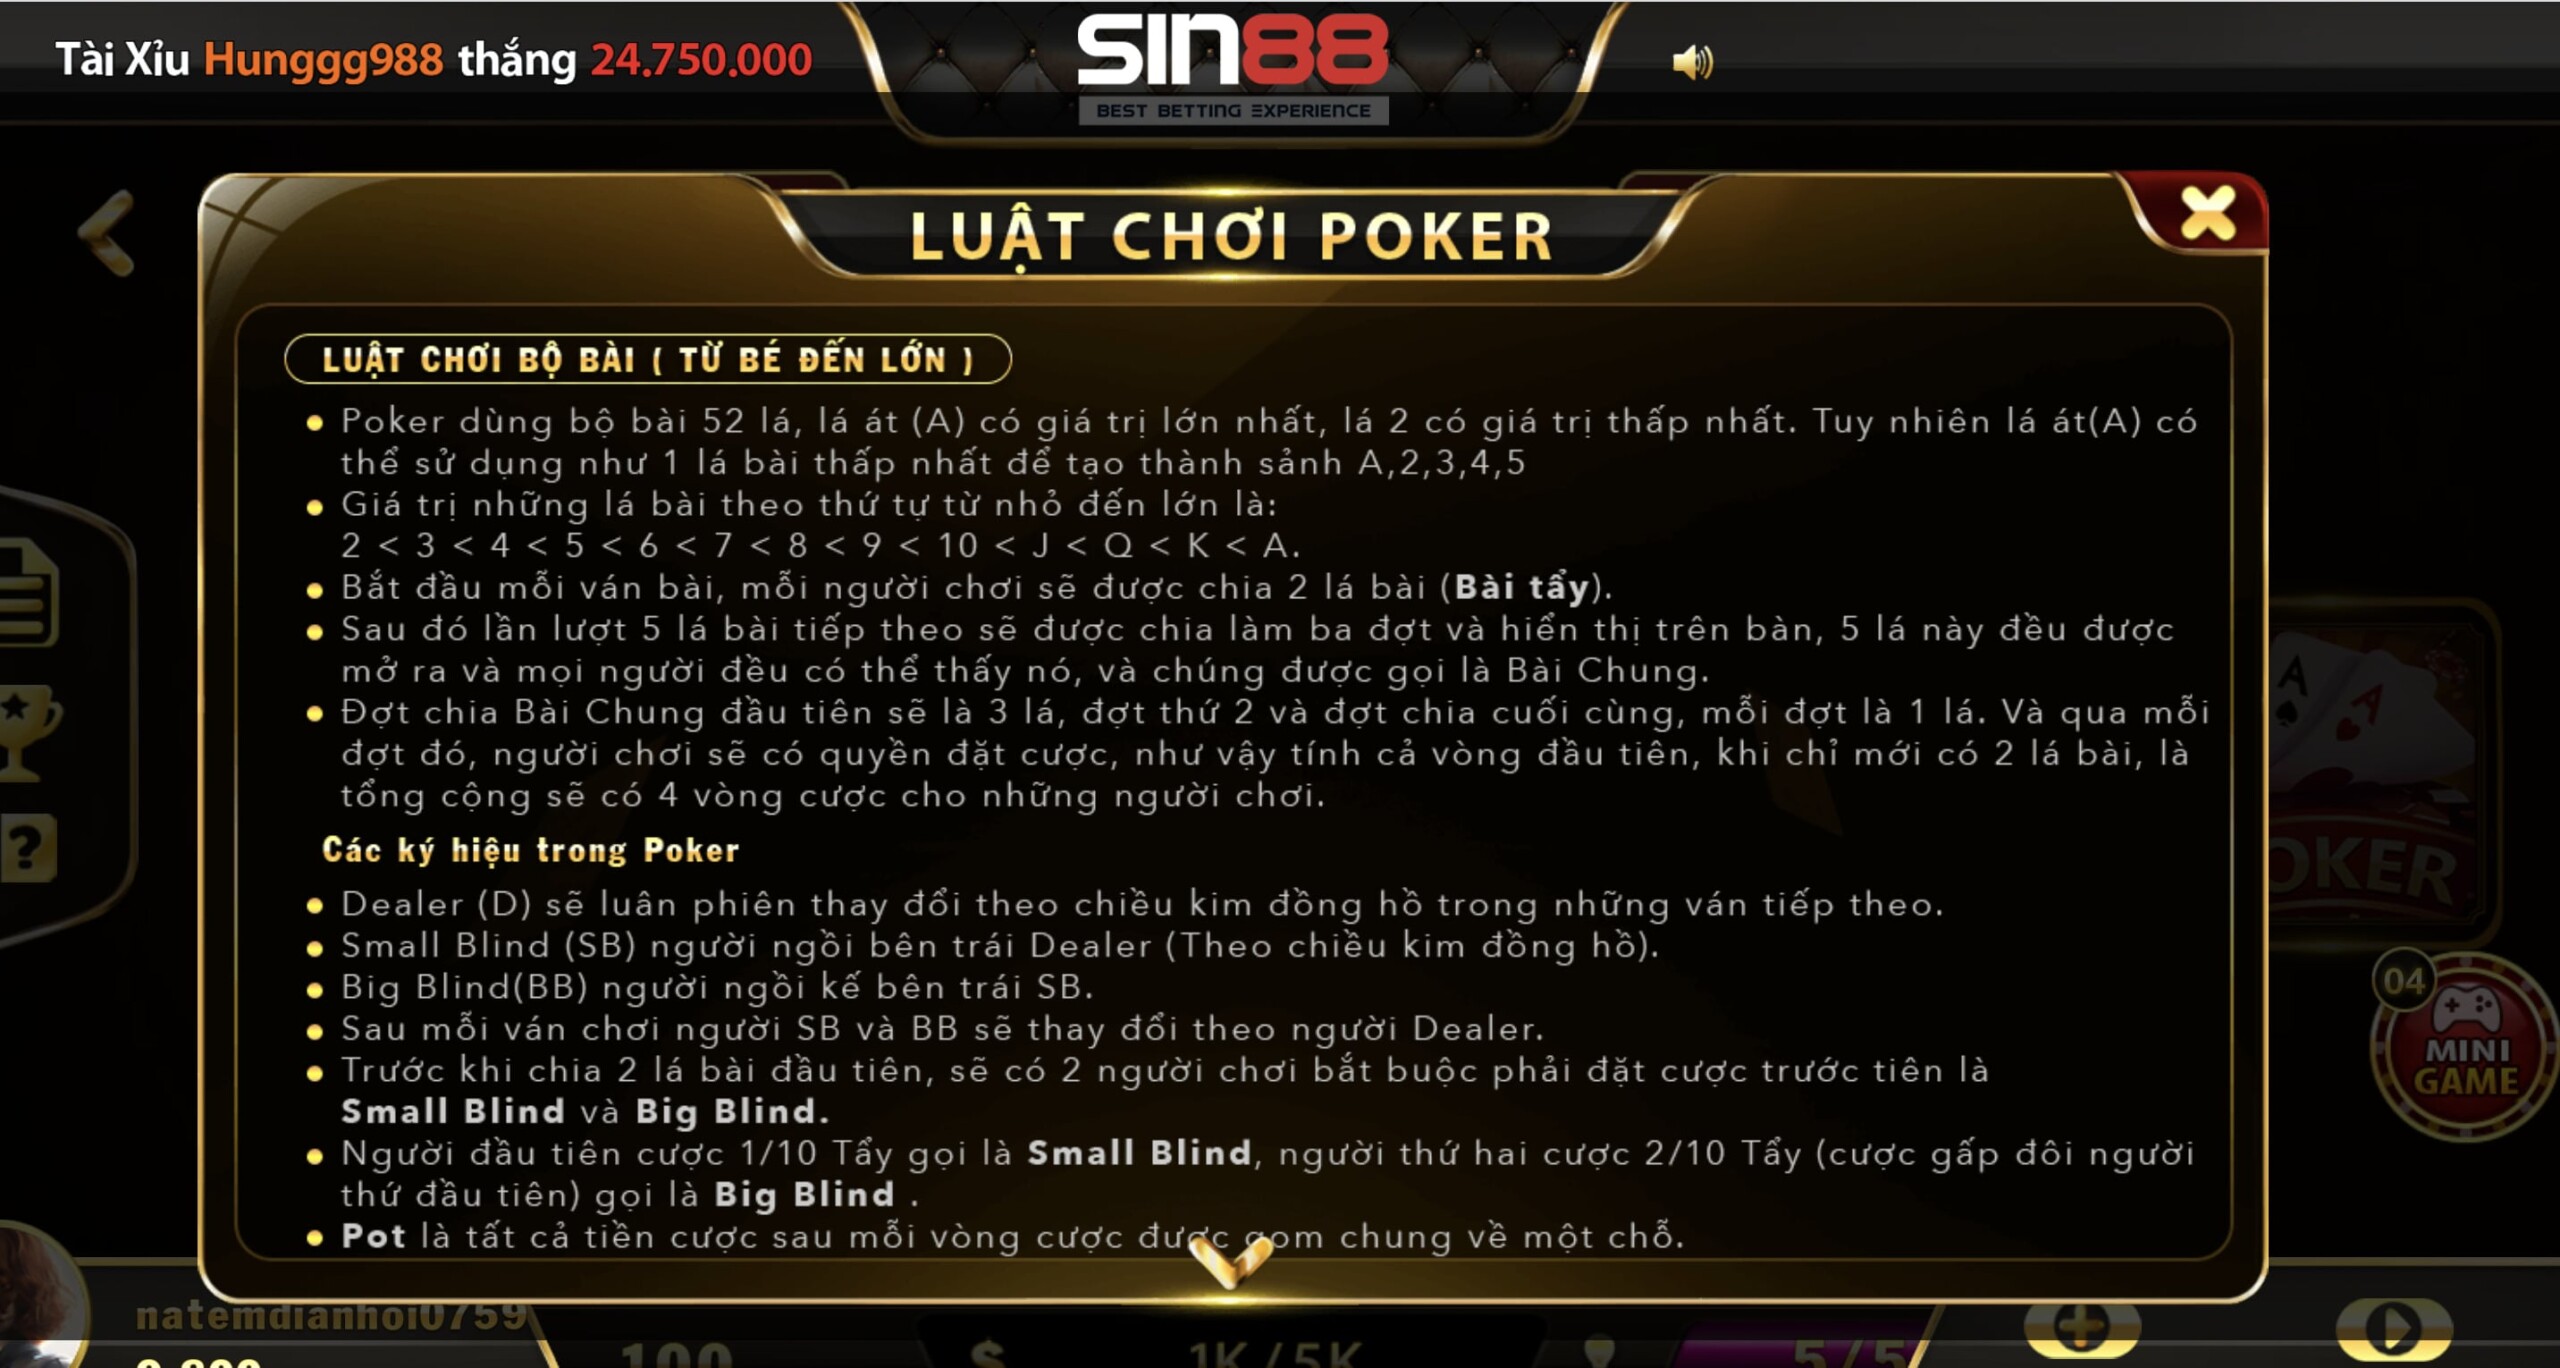 Luật chơi và cách chơi game bài Poker tại nhà cái Sin88